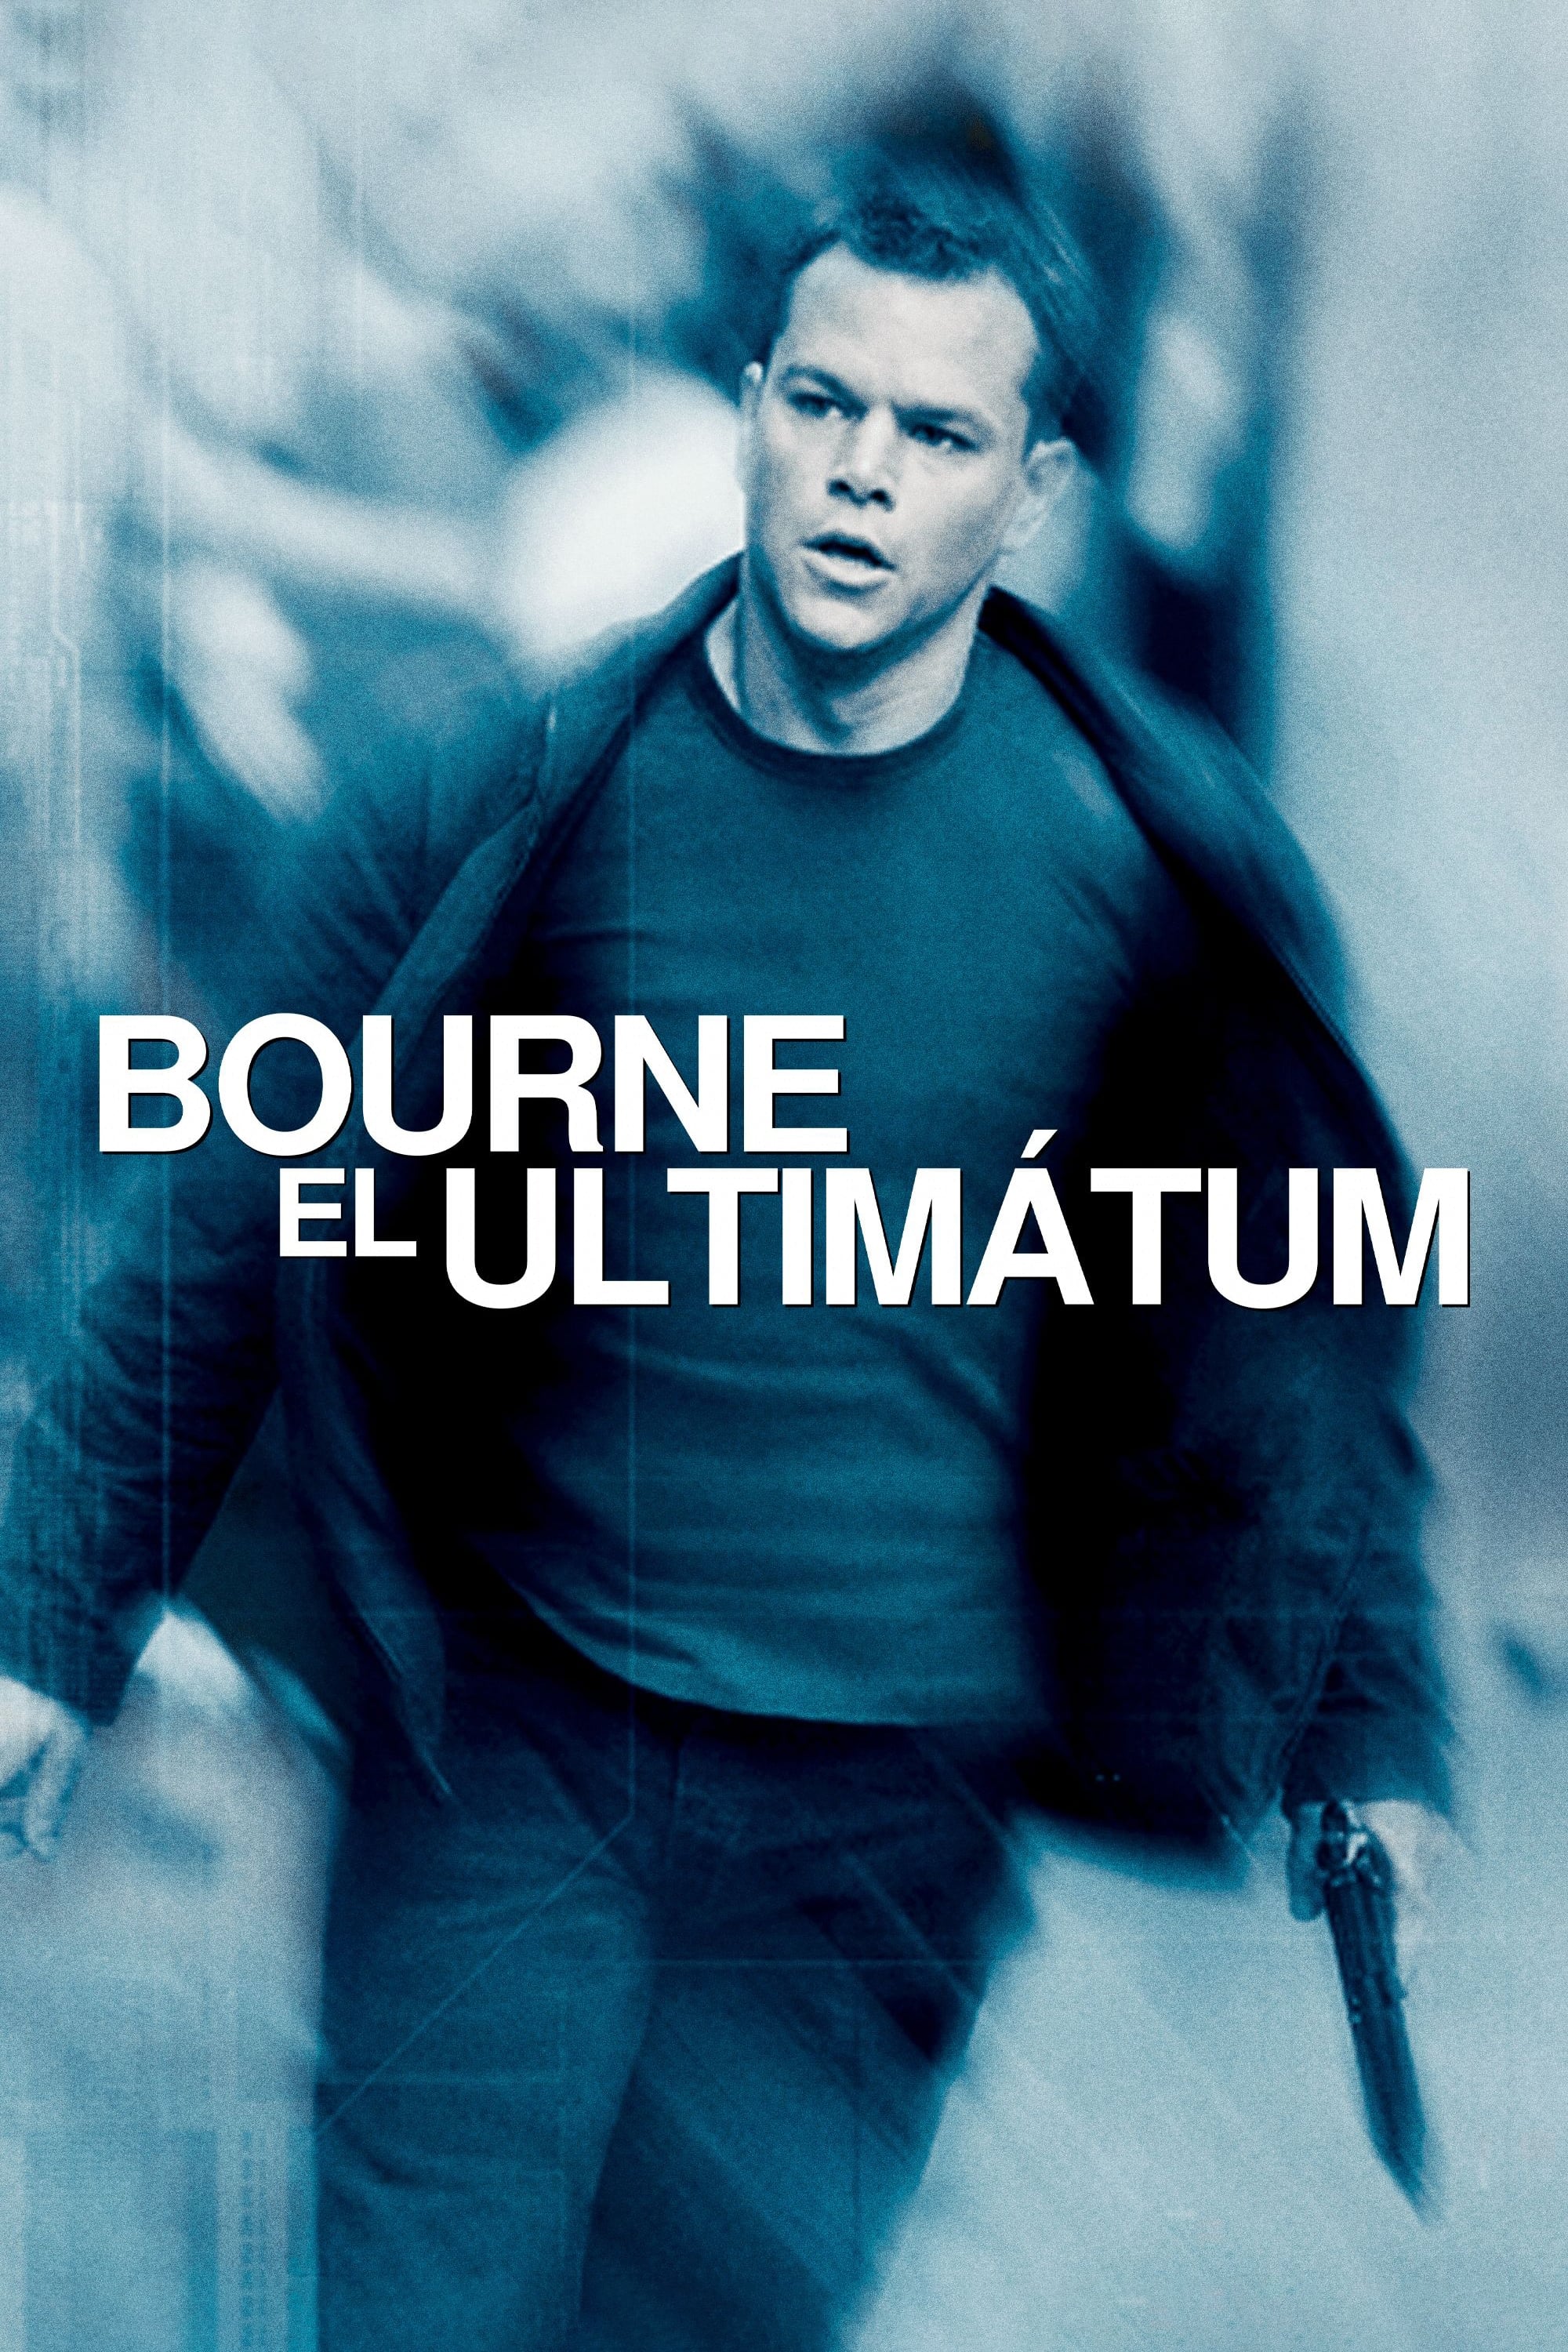 Bourne El Ultimatum